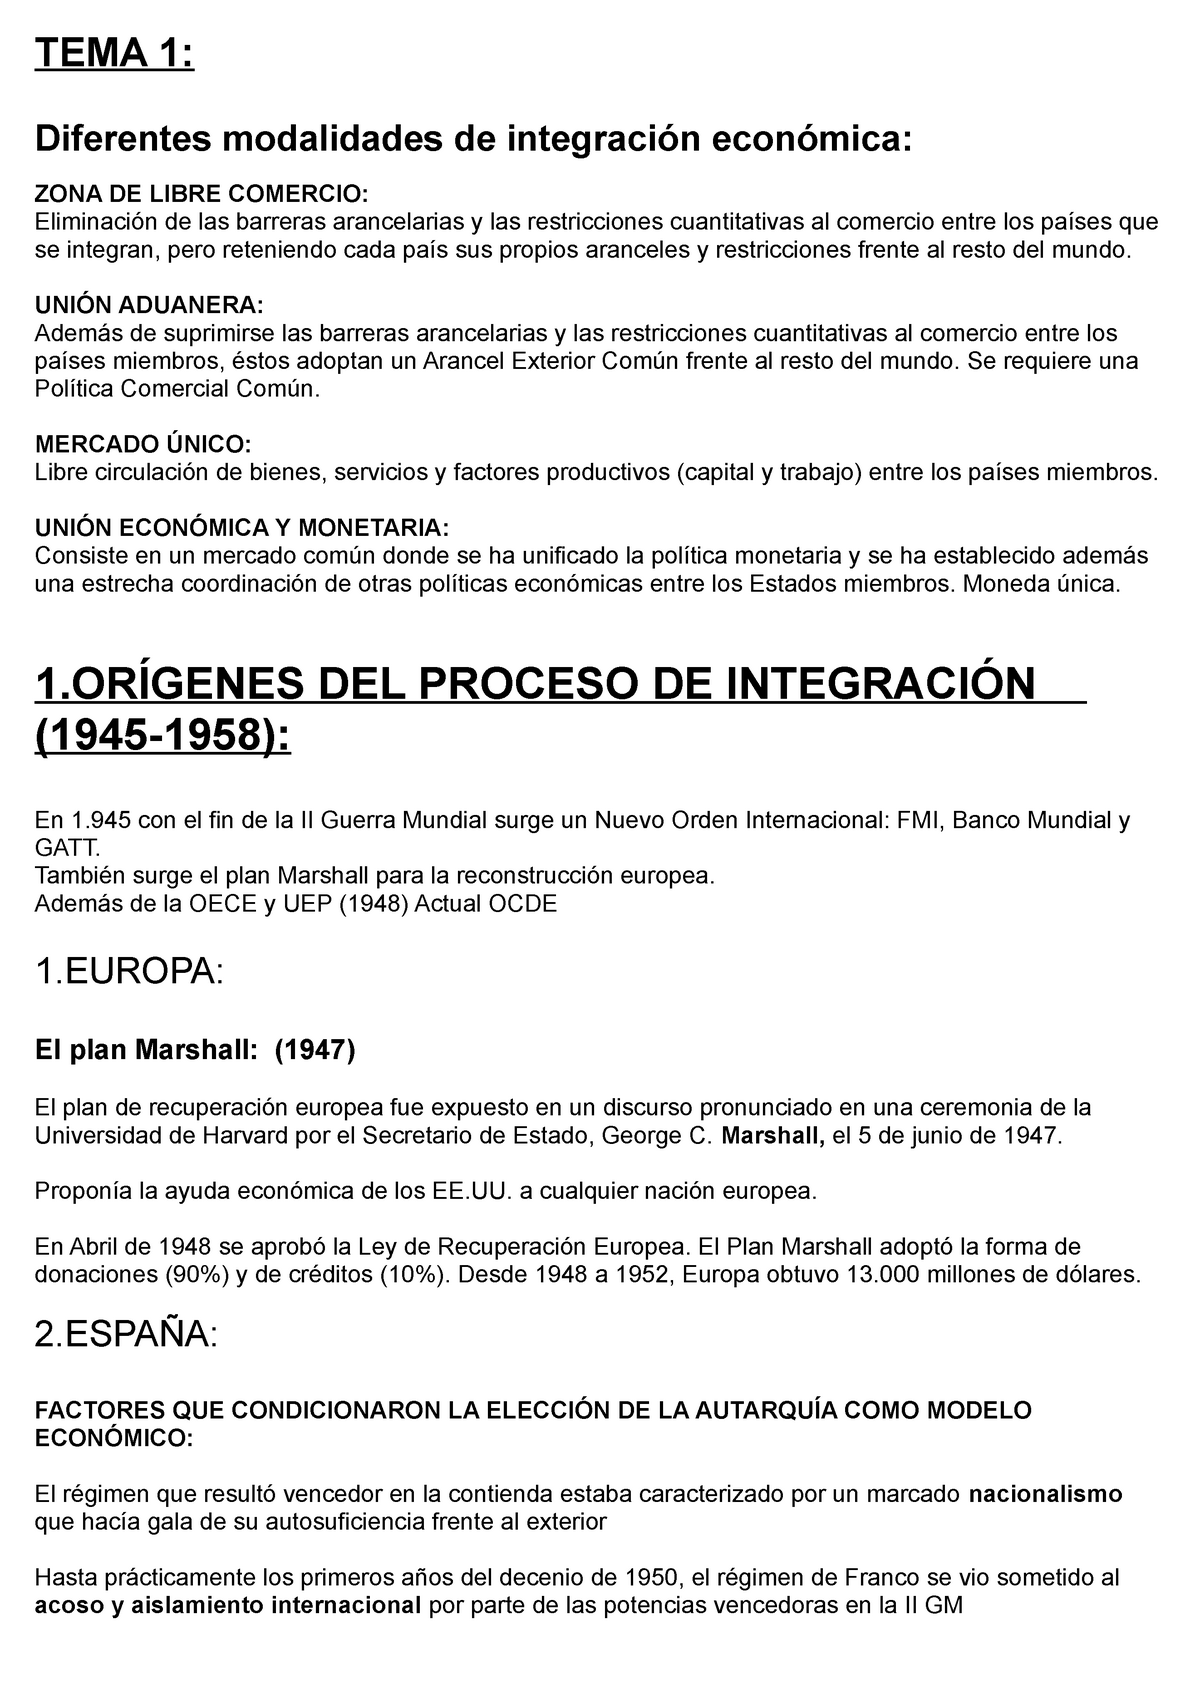 ECONOMIA de LA UE - Apuntes - EUROPEA - Temas 1 - 9 - TEMA 1: Diferentes  modalidades de integración - Studocu